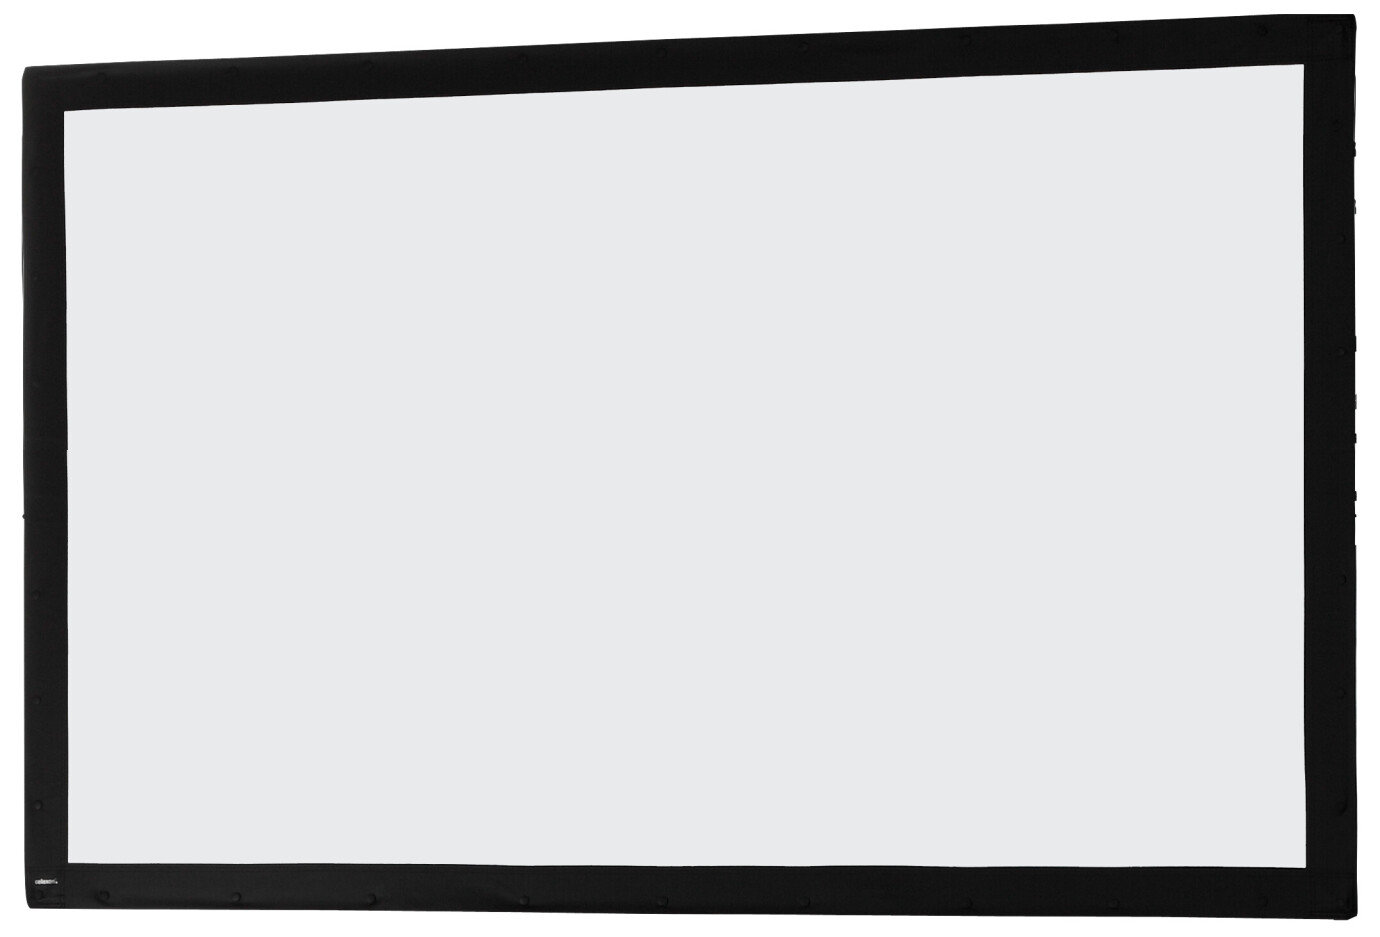 Toile 203 x 127 cm Ecran sur cadre celexon « Mobil Expert », projection avant